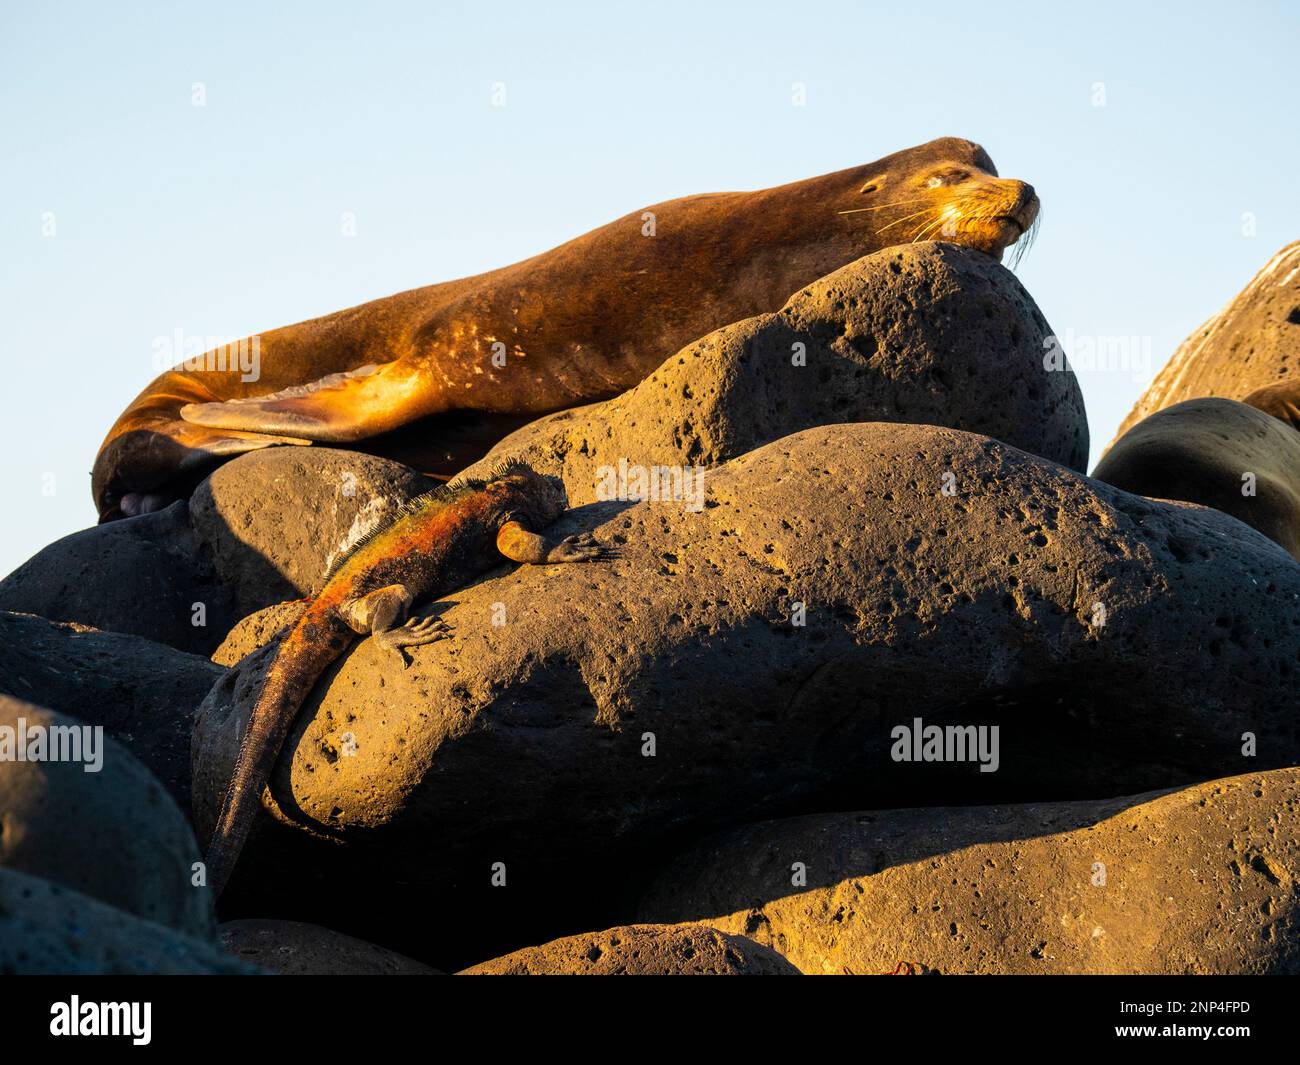 Seelöwen und Meerechsen teilen sich einen Felsen, Espanola Island, Galapagos, Ecuador Stockfoto